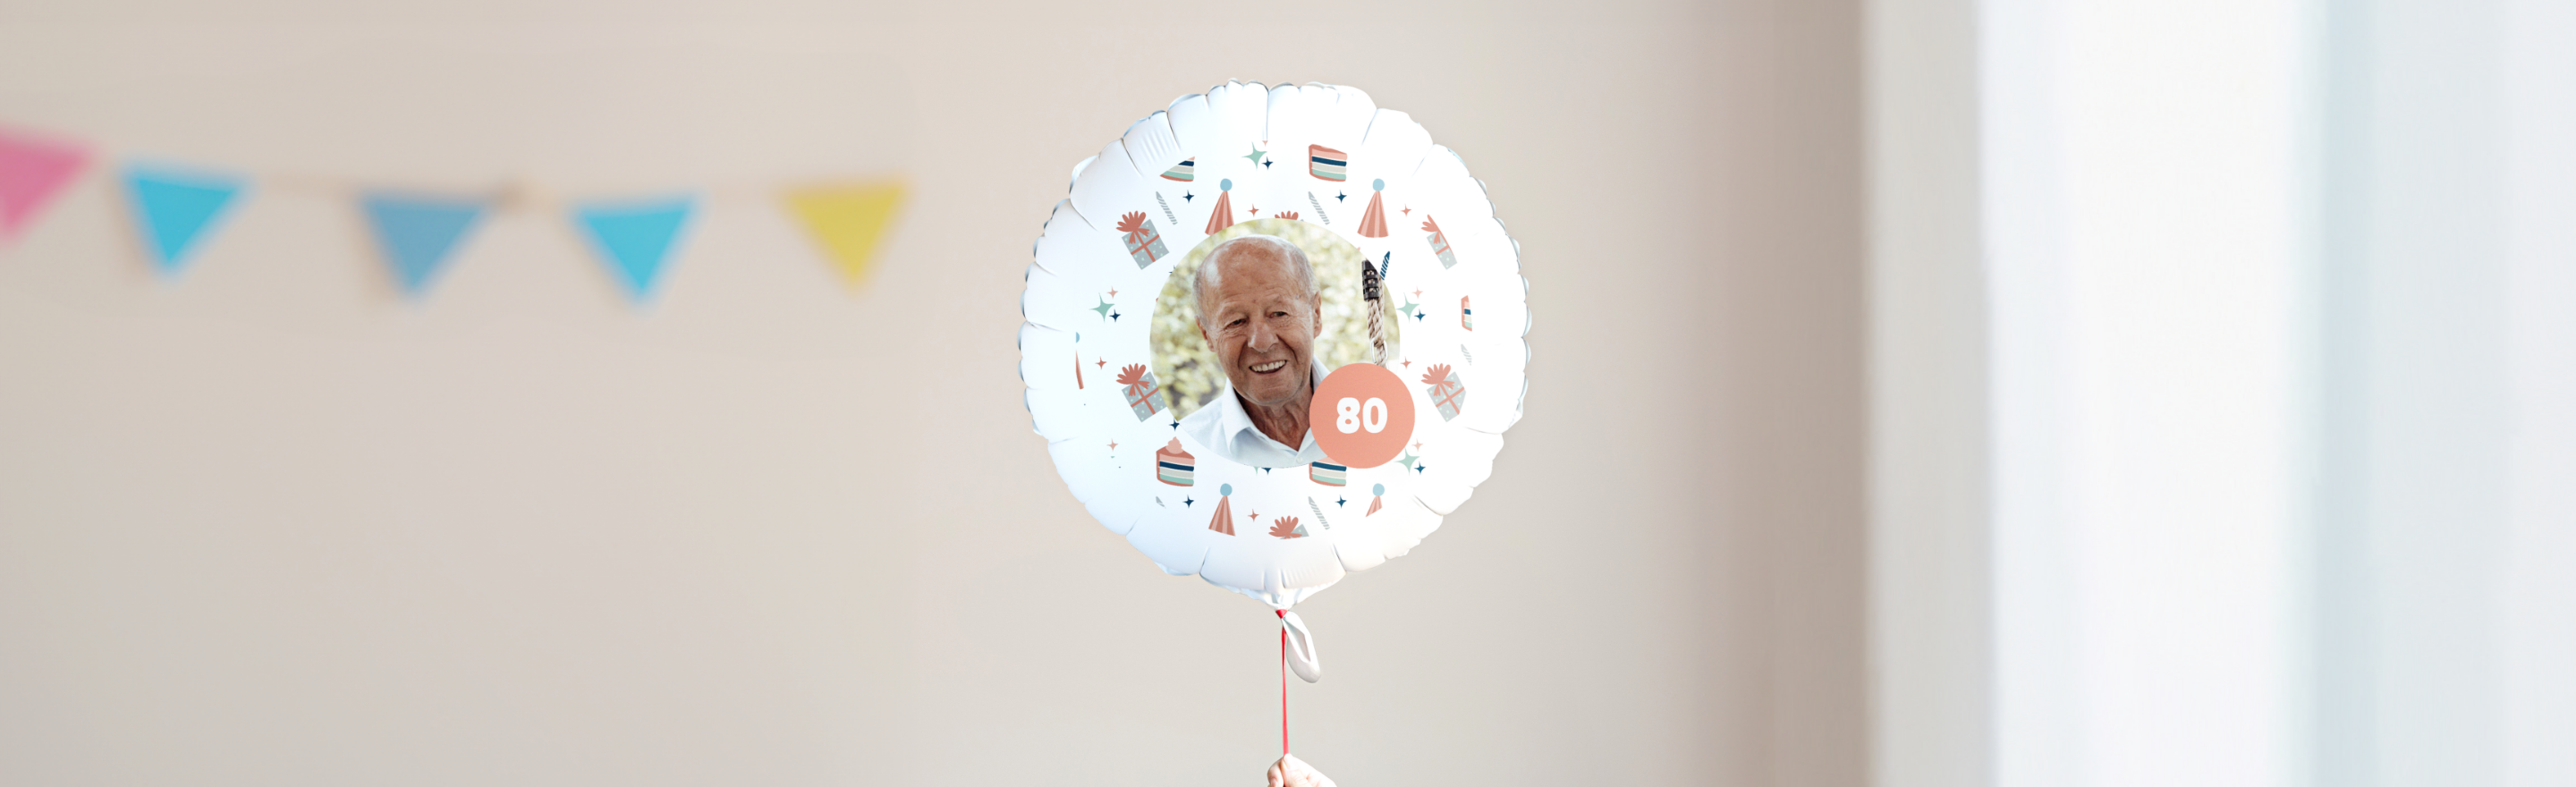 Ajándékötletek 80. születésnapra